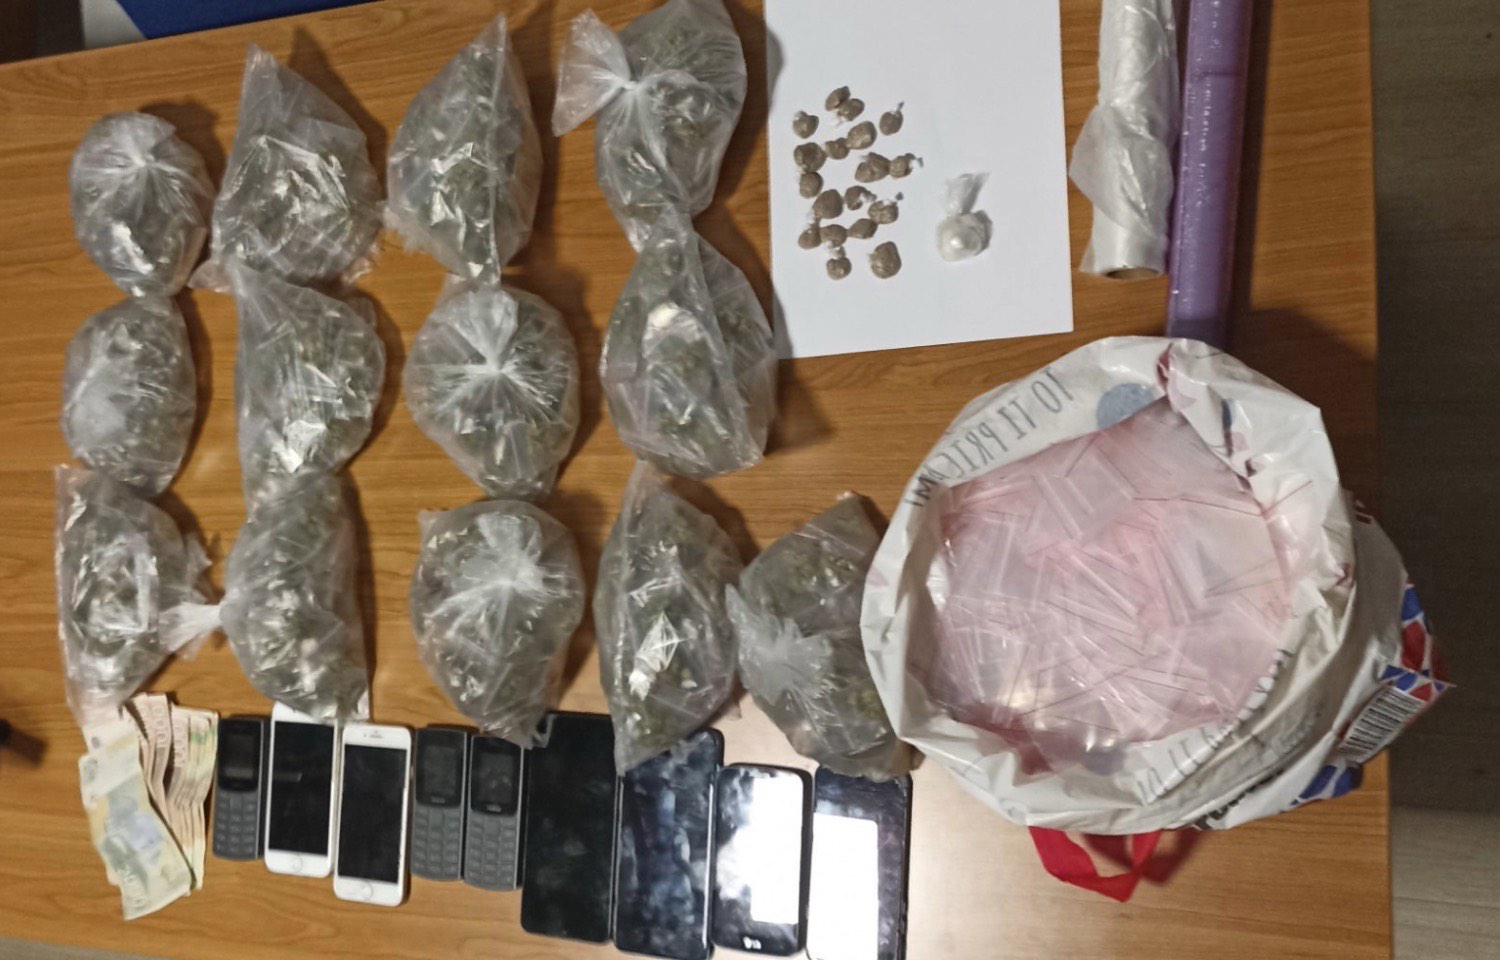 Ухапшене две особе код којих је пронађен хероин 